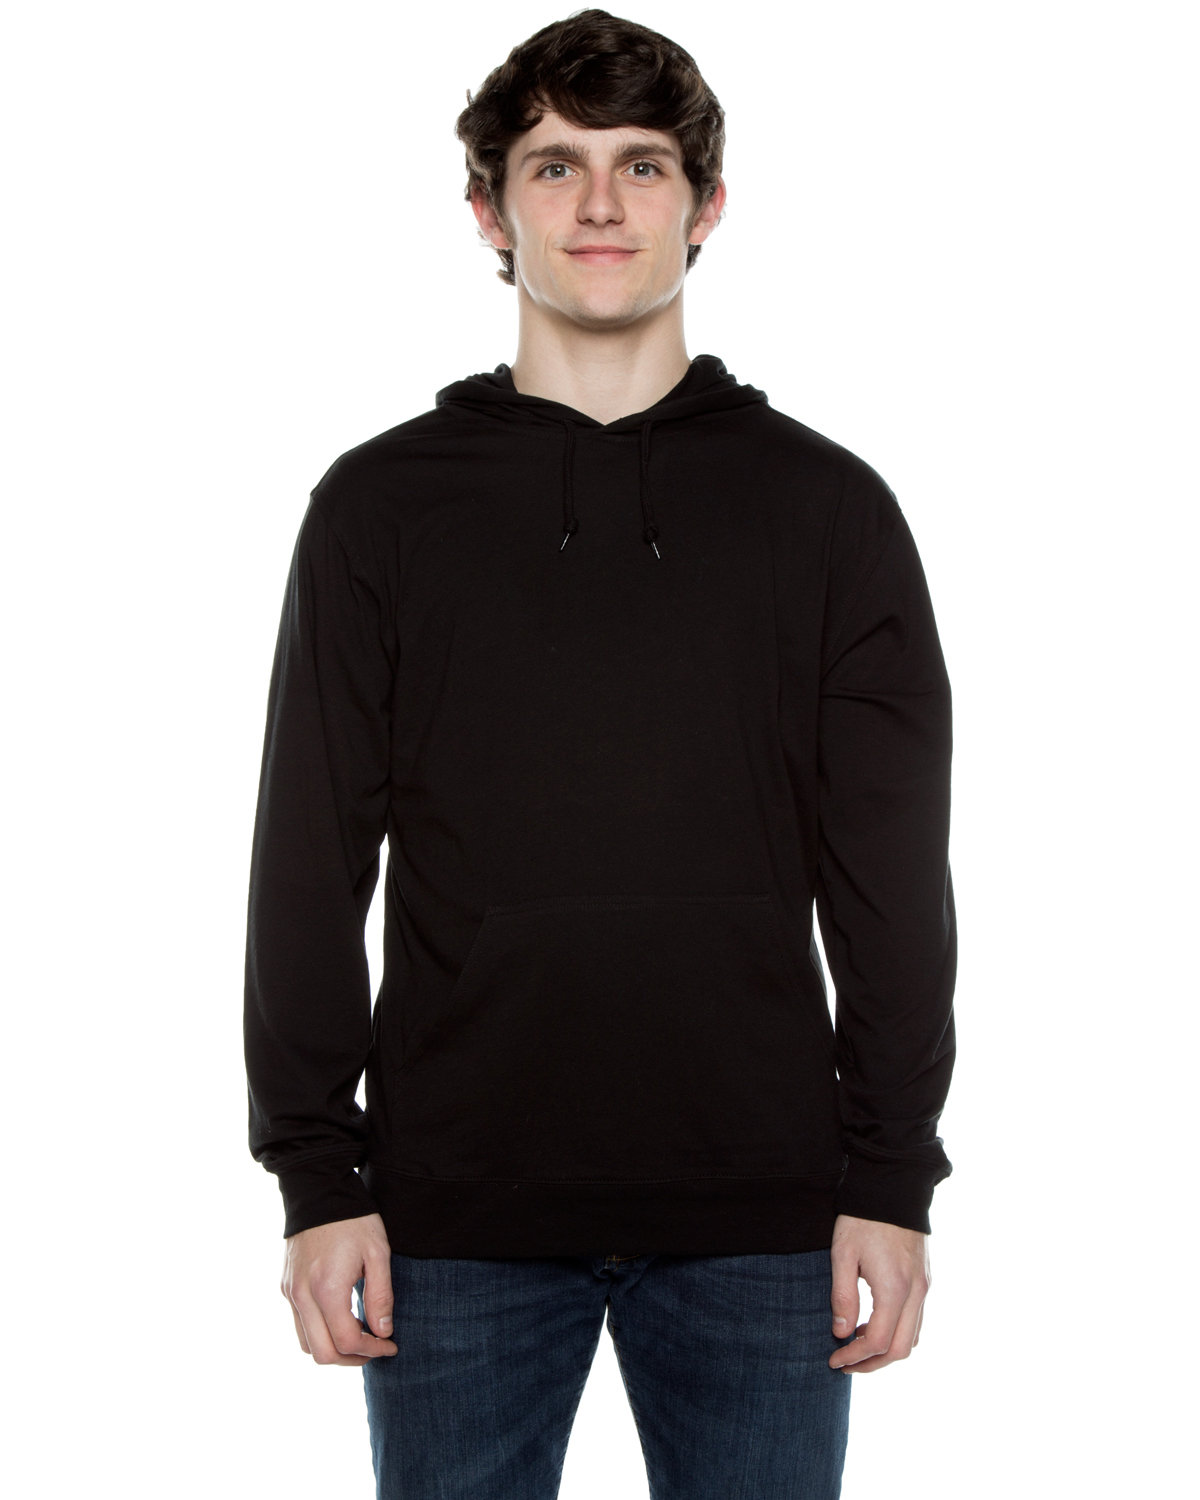 Beimar Drop Ship Unisex 4.5 oz. Long-Sleeve Jersey Hooded T-Shirt BLACK 